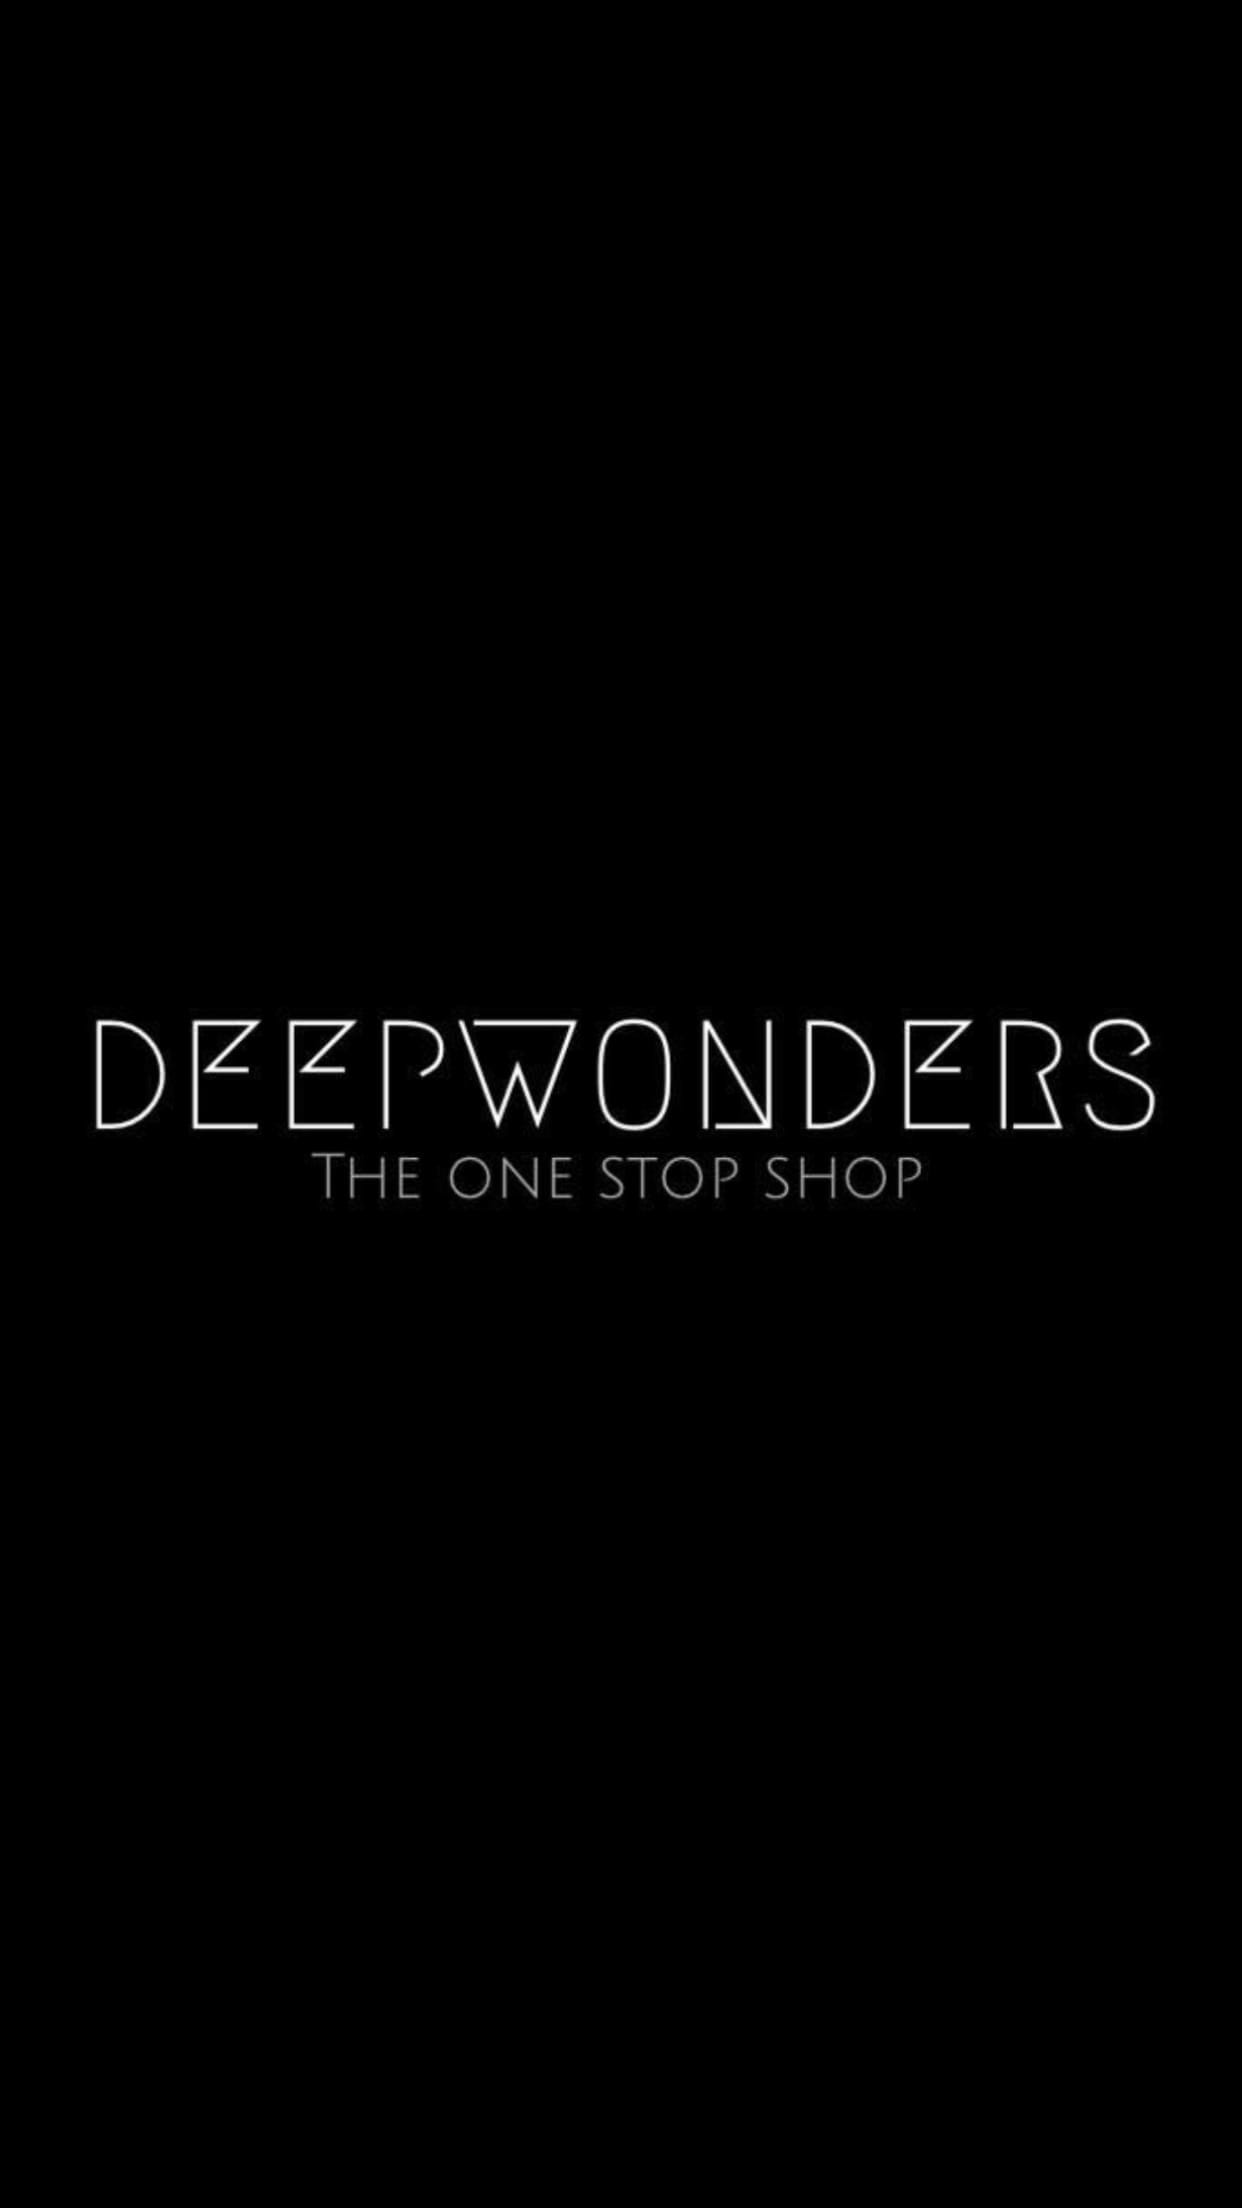 Deep Wonders